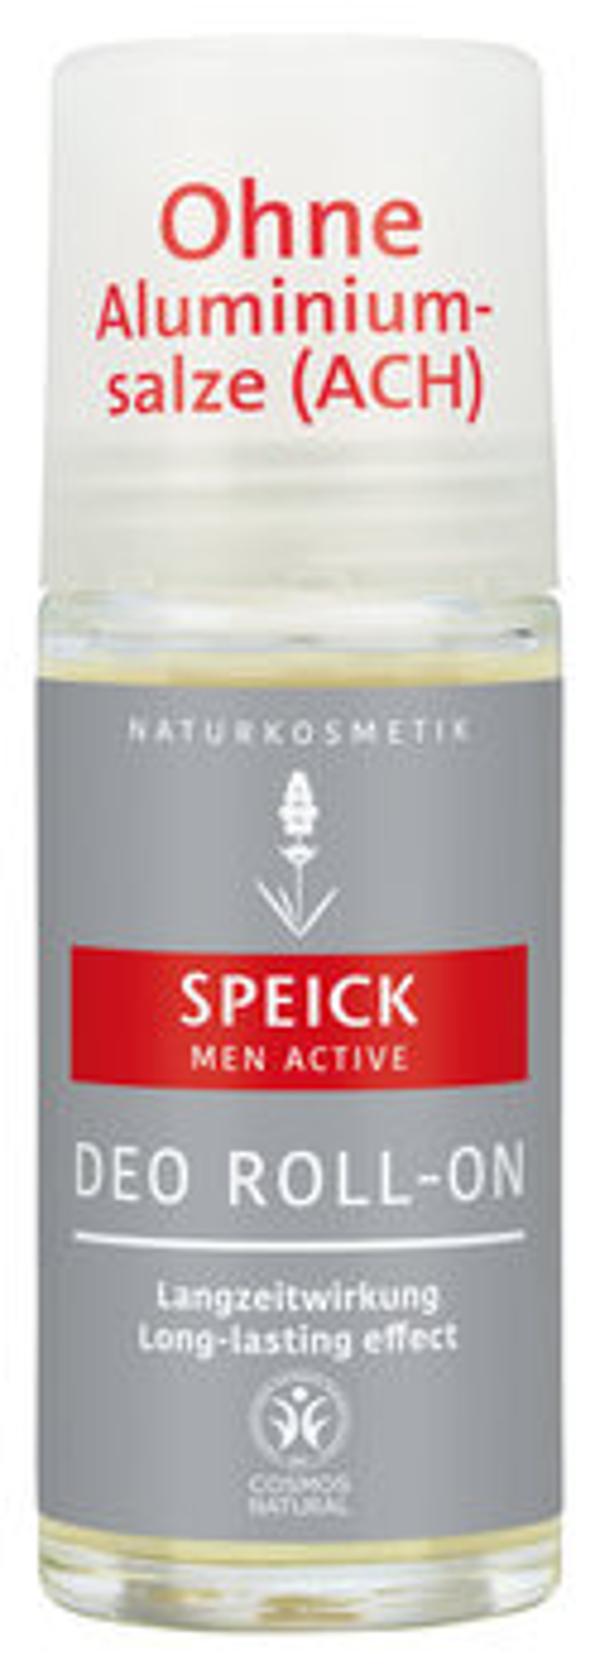 Produktfoto zu Speick Men Active Deo Roll-On 50ml